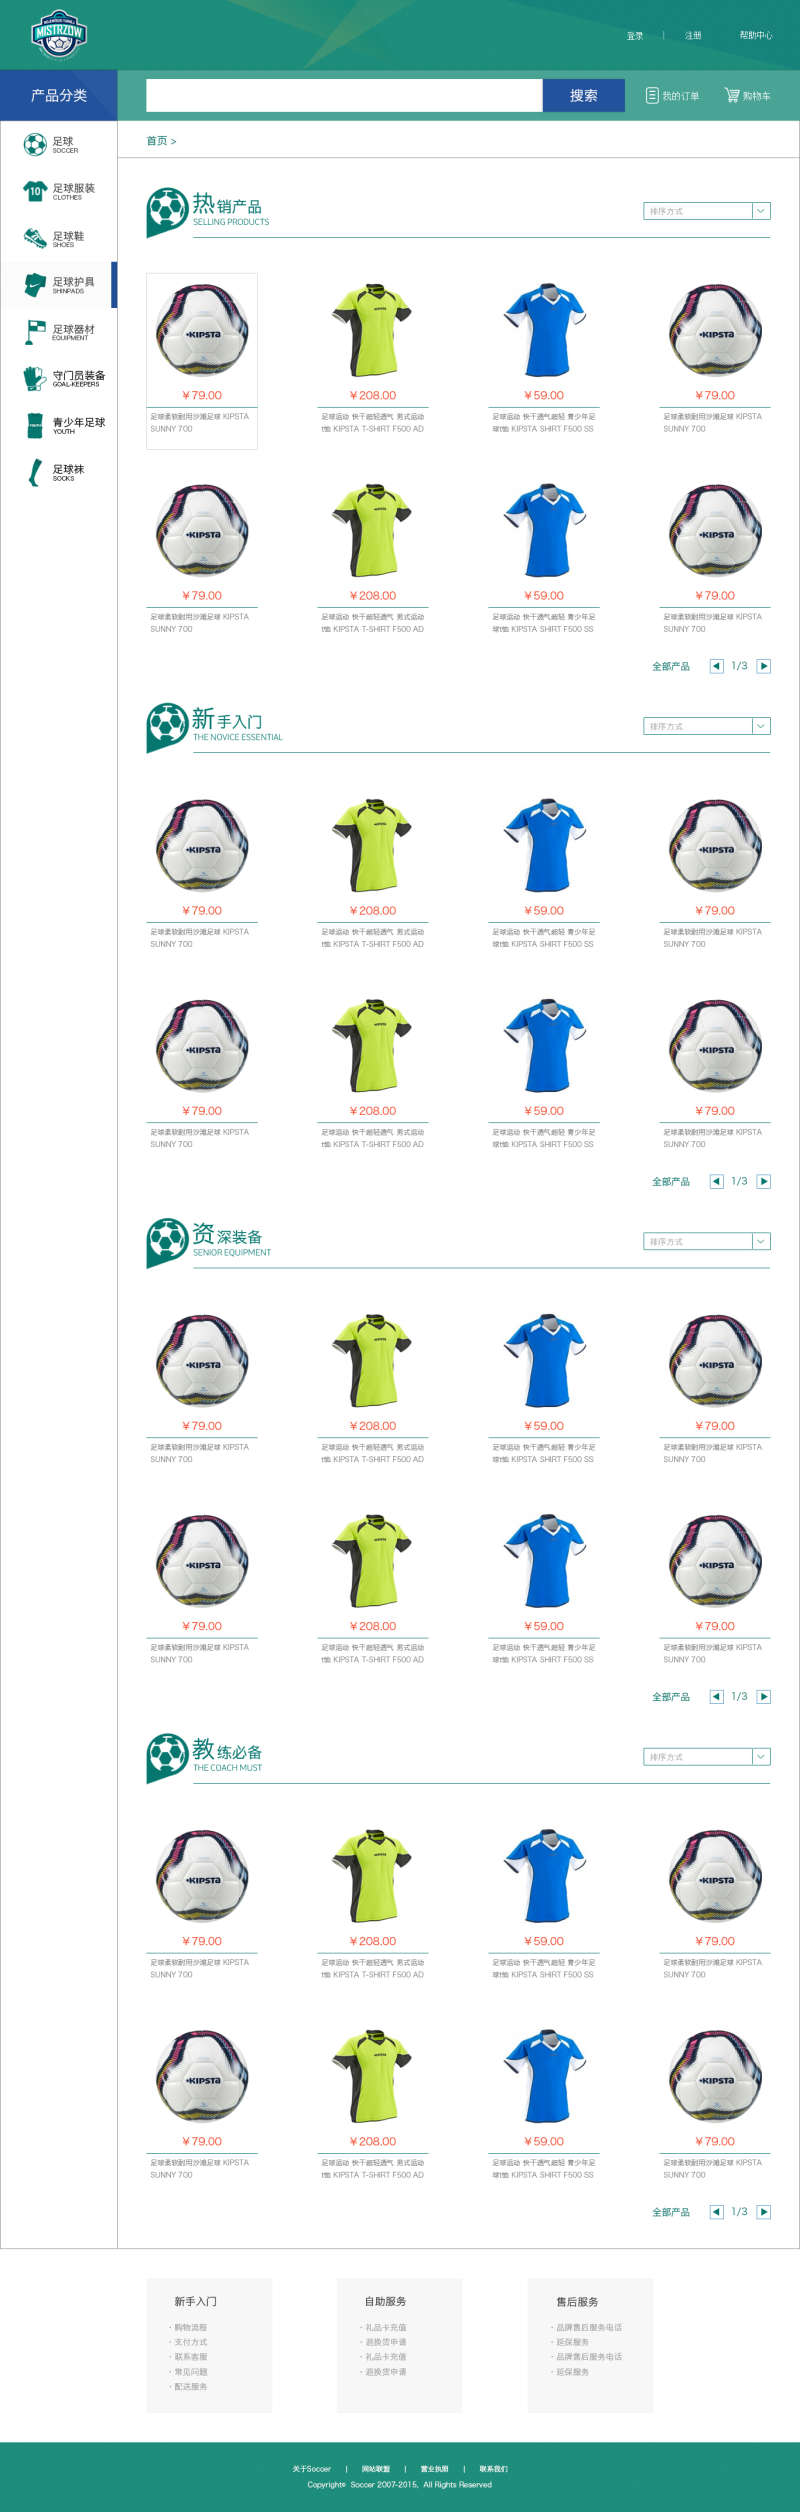 绿色的足球体育用品商城产品列表页面模板(图1)